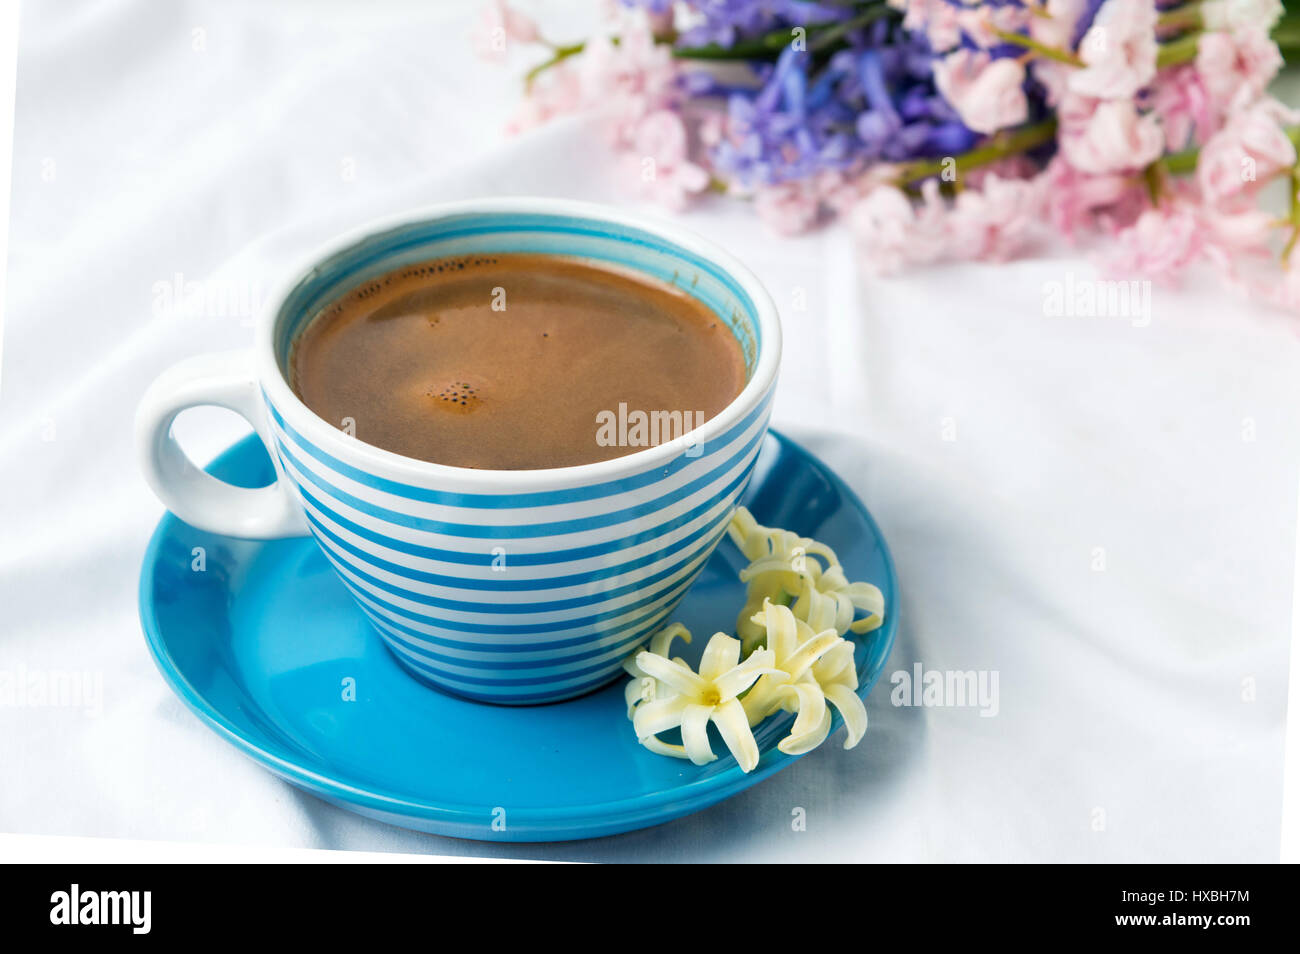 Tazza di caffè e coloratissimi fiori di giacinto Foto Stock